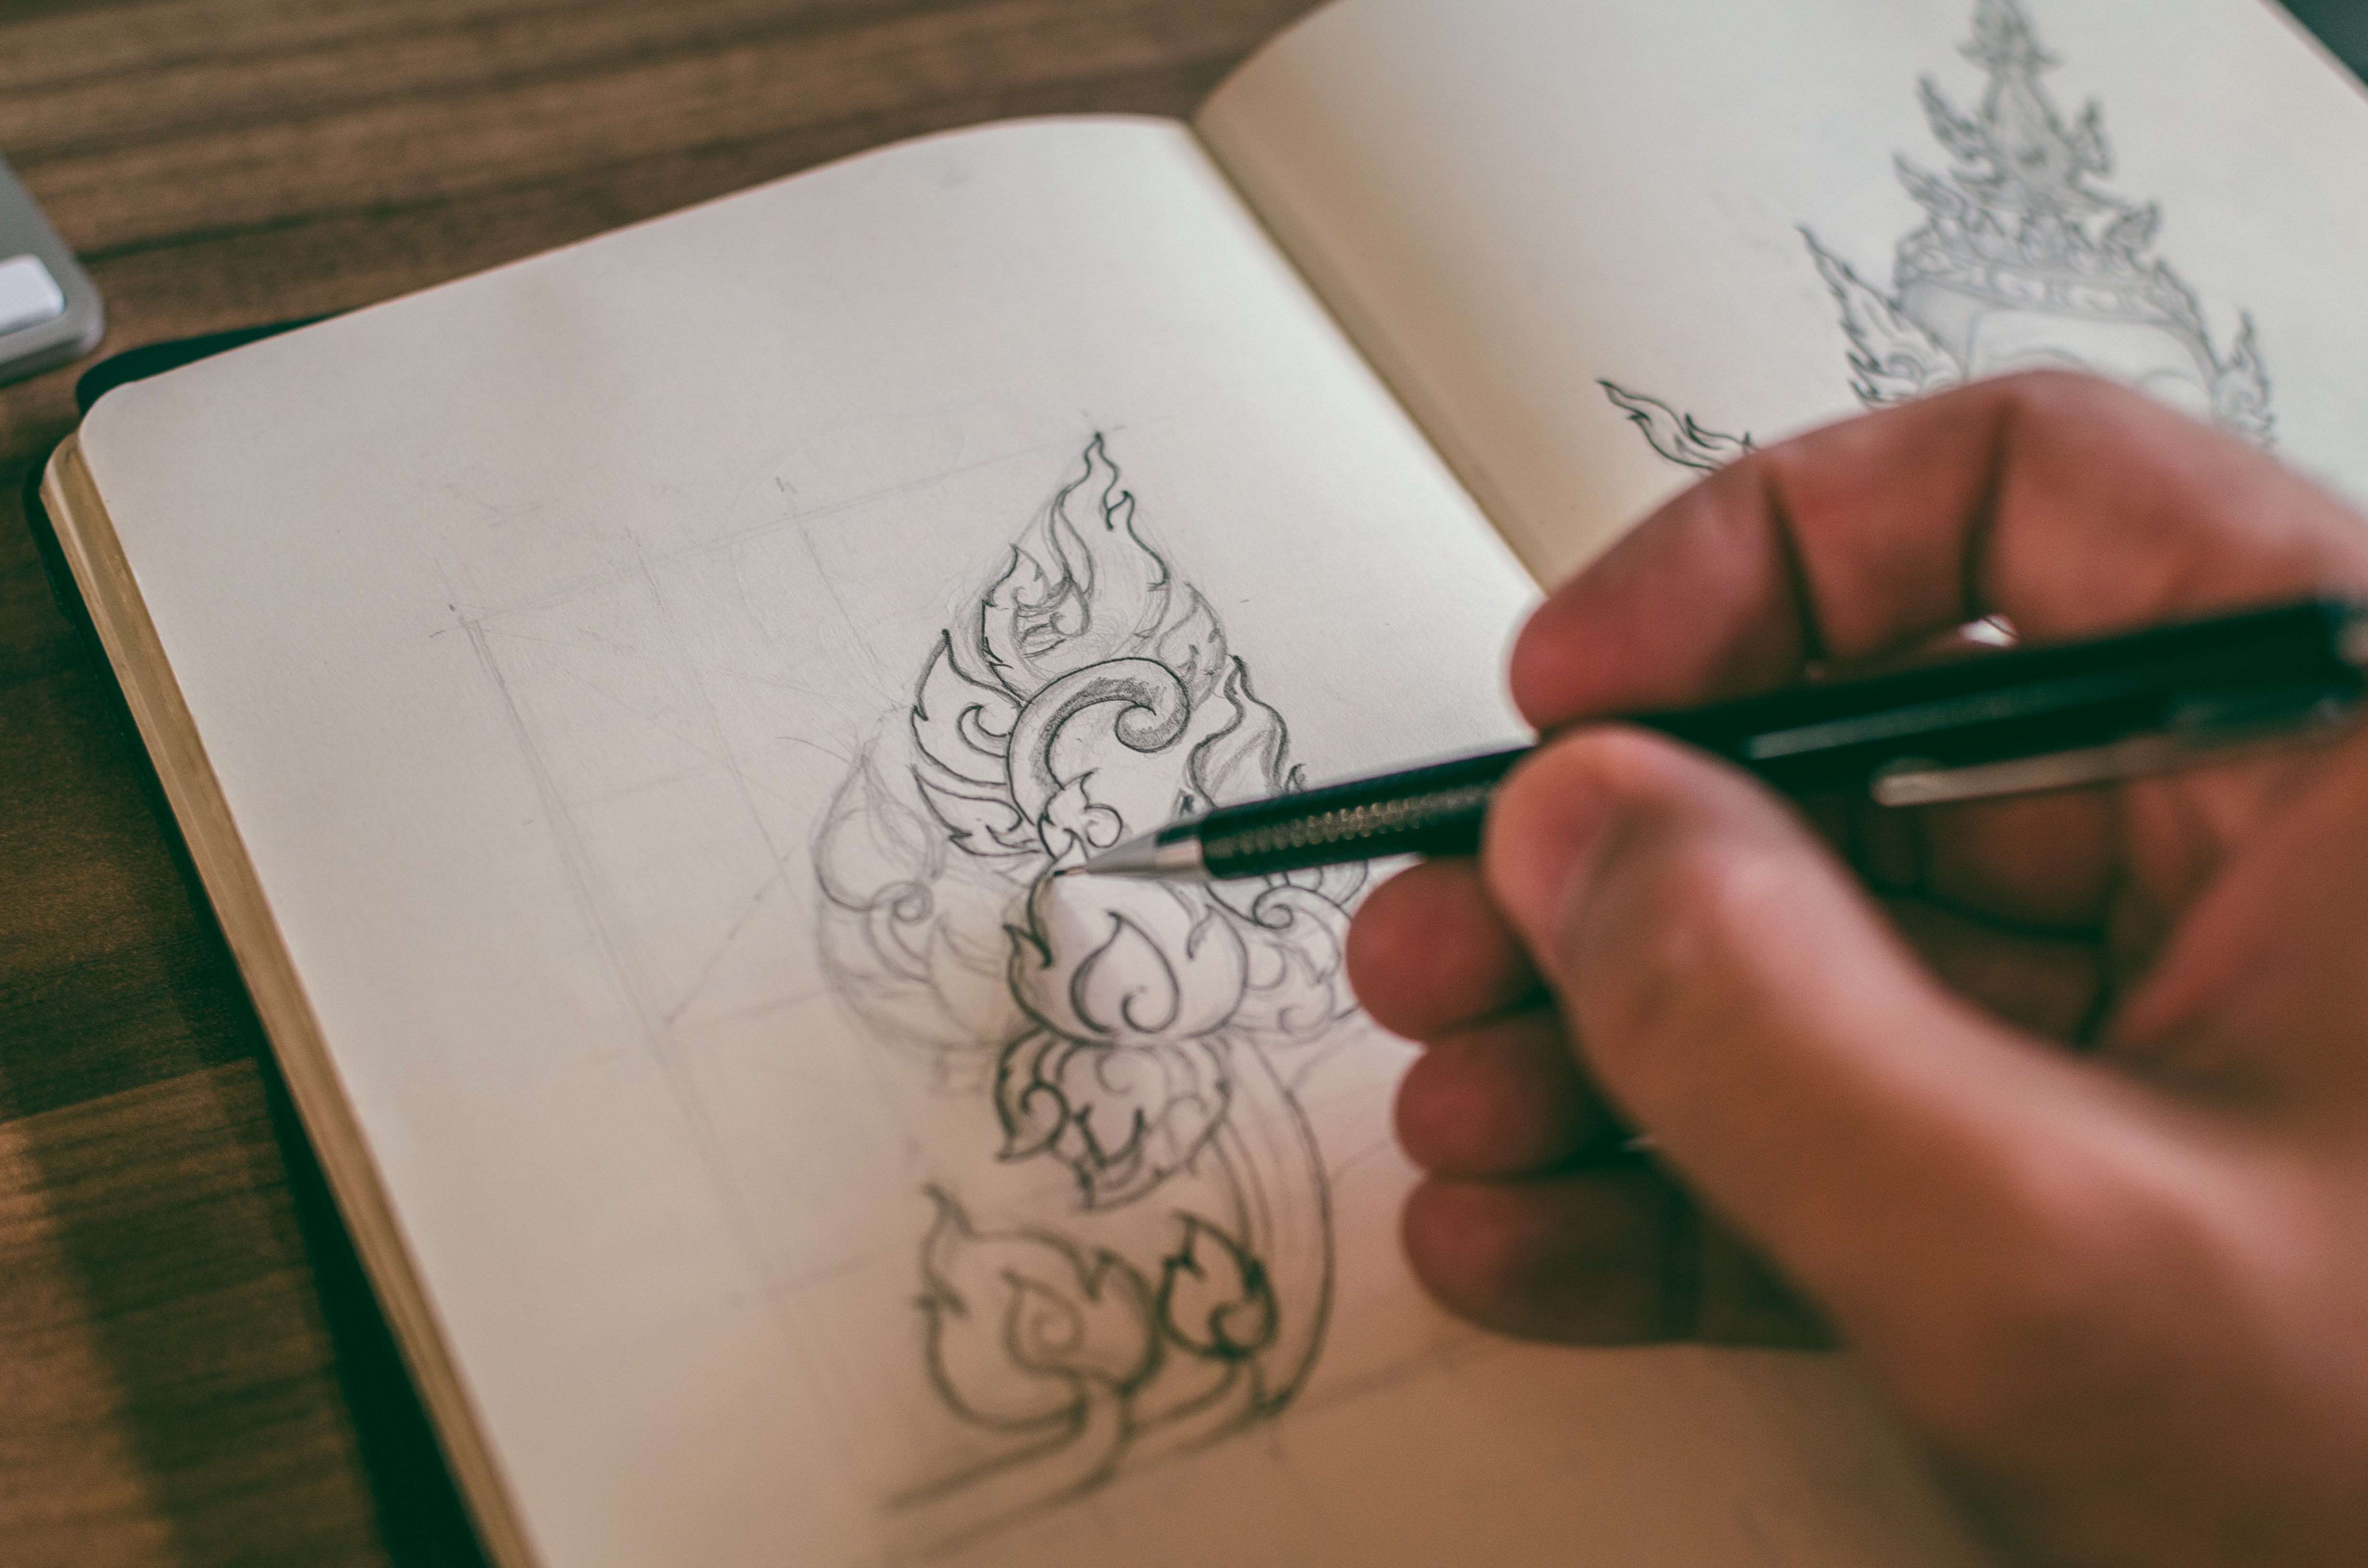 La imagen muestra una mano dibujando unas flores con un lápiz.